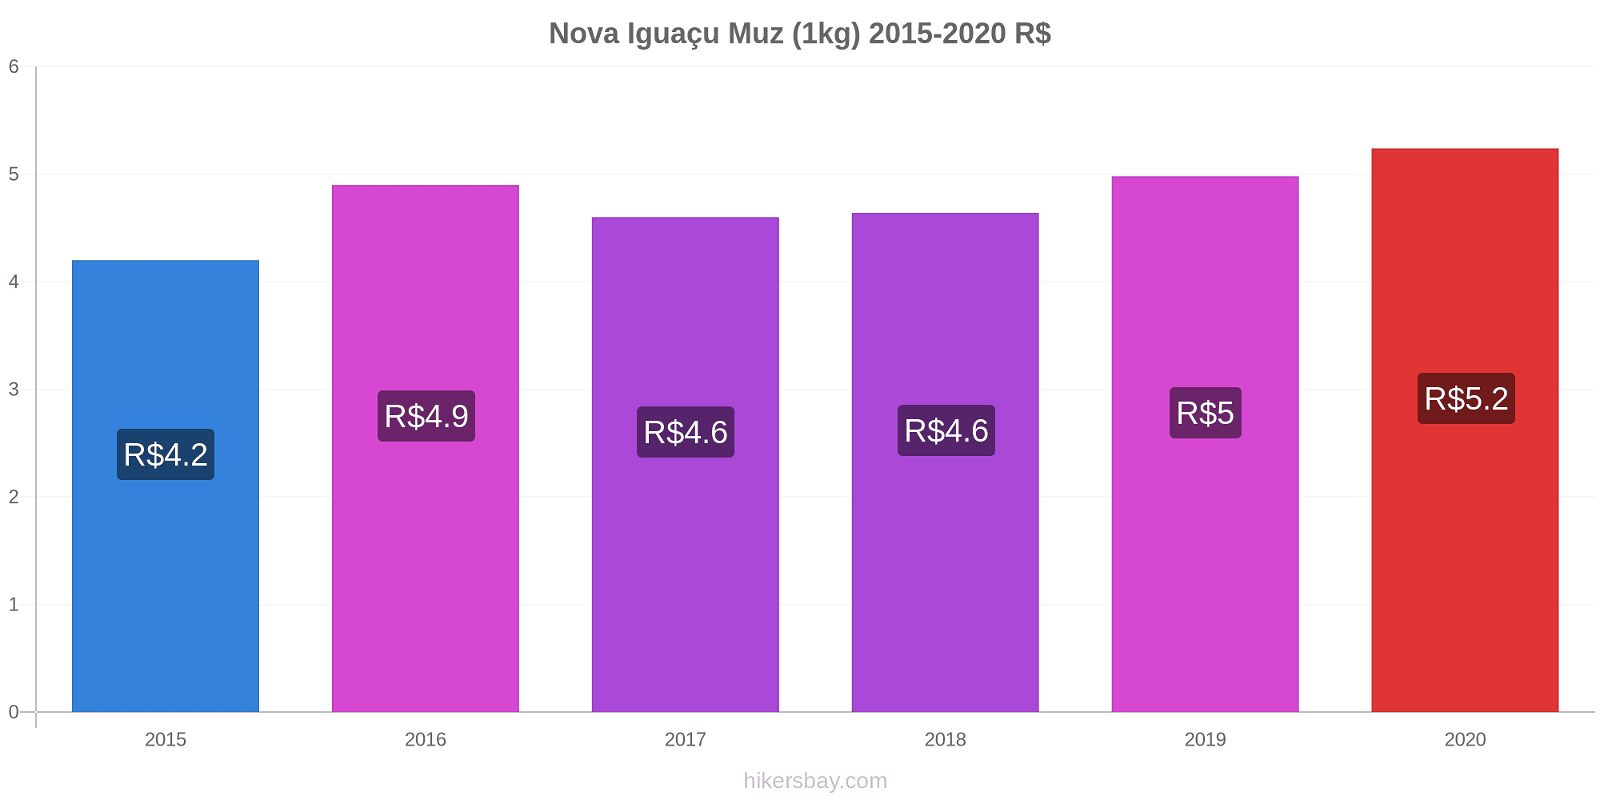 Nova Iguaçu fiyat değişiklikleri Muz (1kg) hikersbay.com